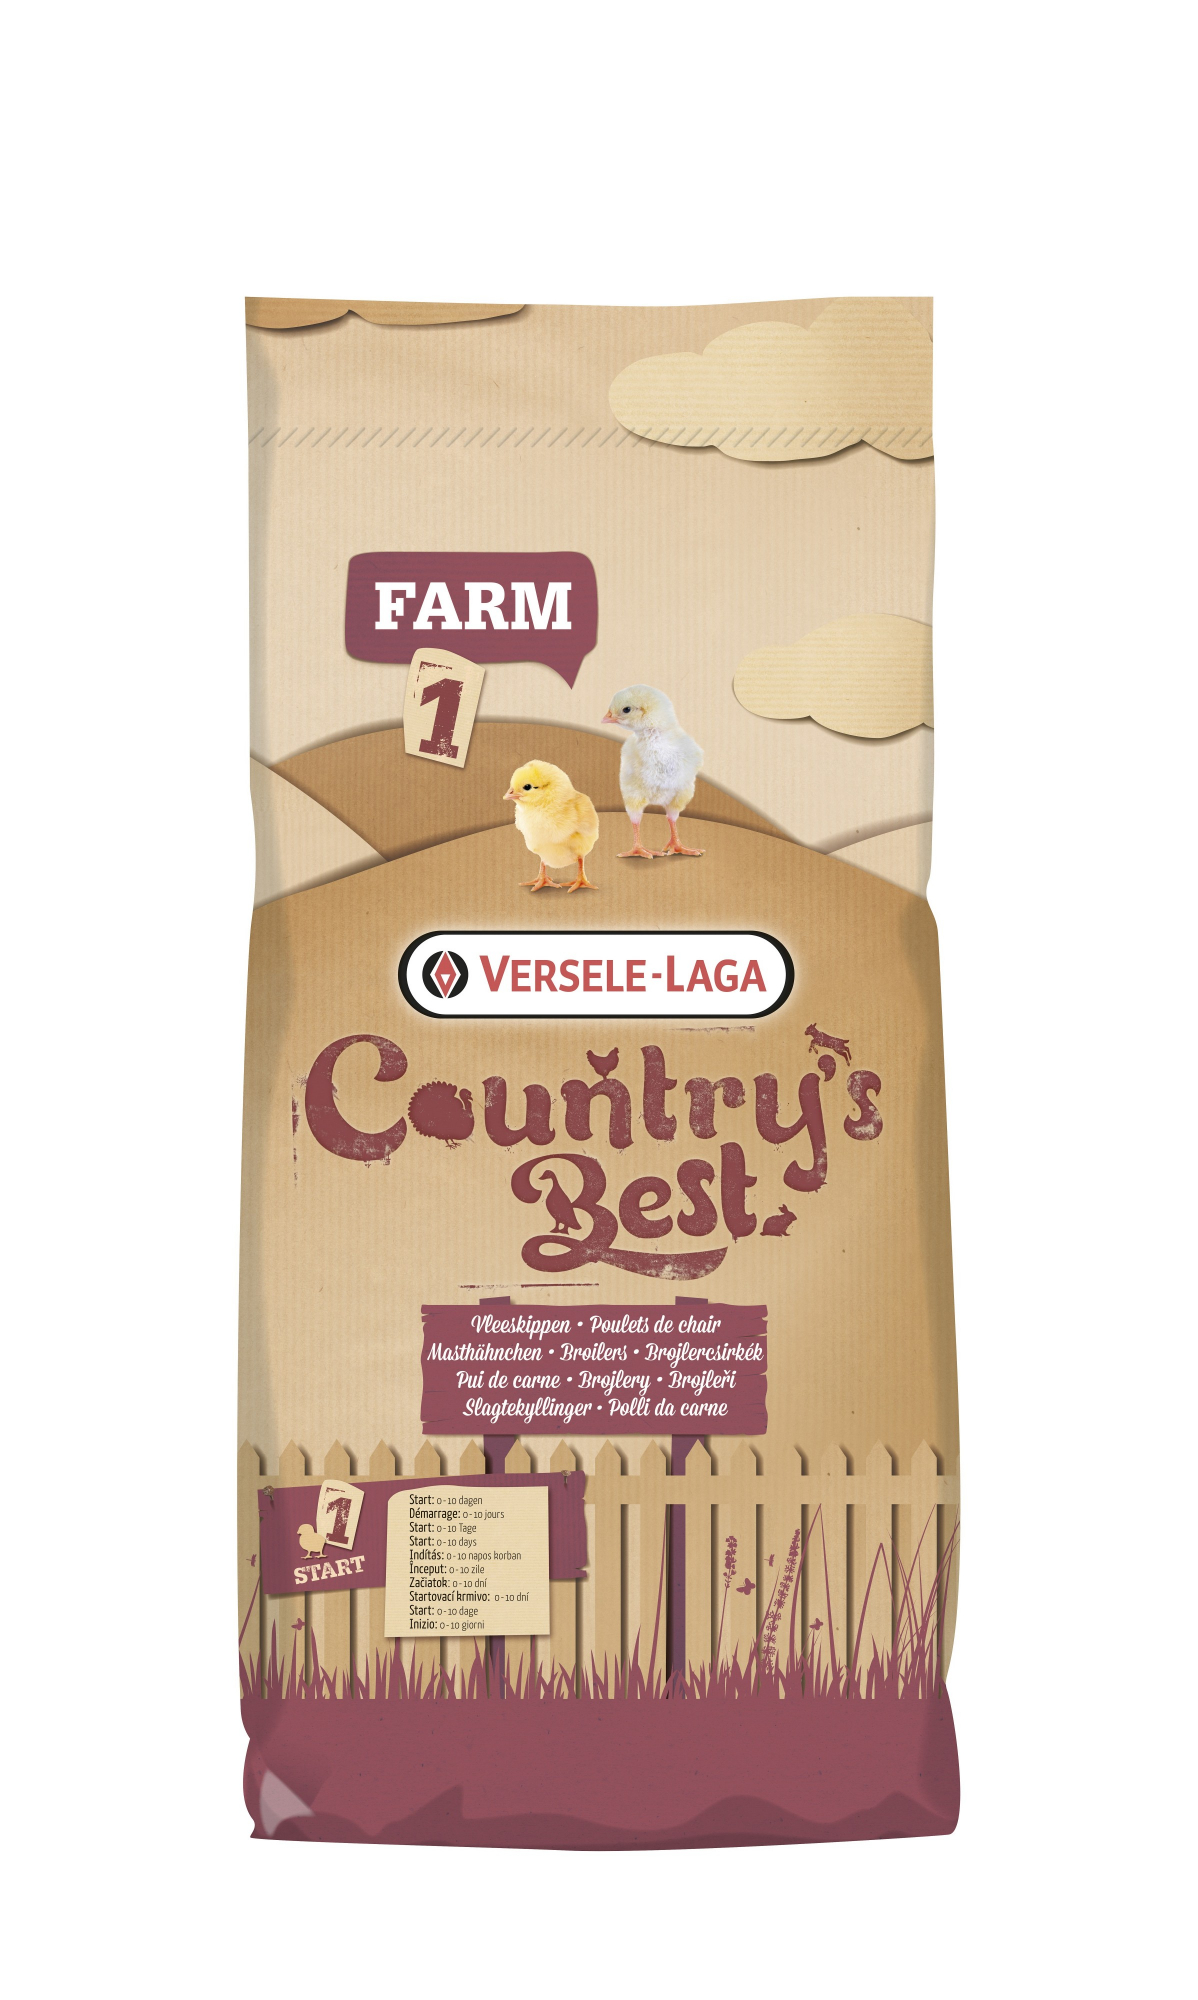 Farm 1 Mash Country's Best Erstes Mehl für die ersten 10 Tage